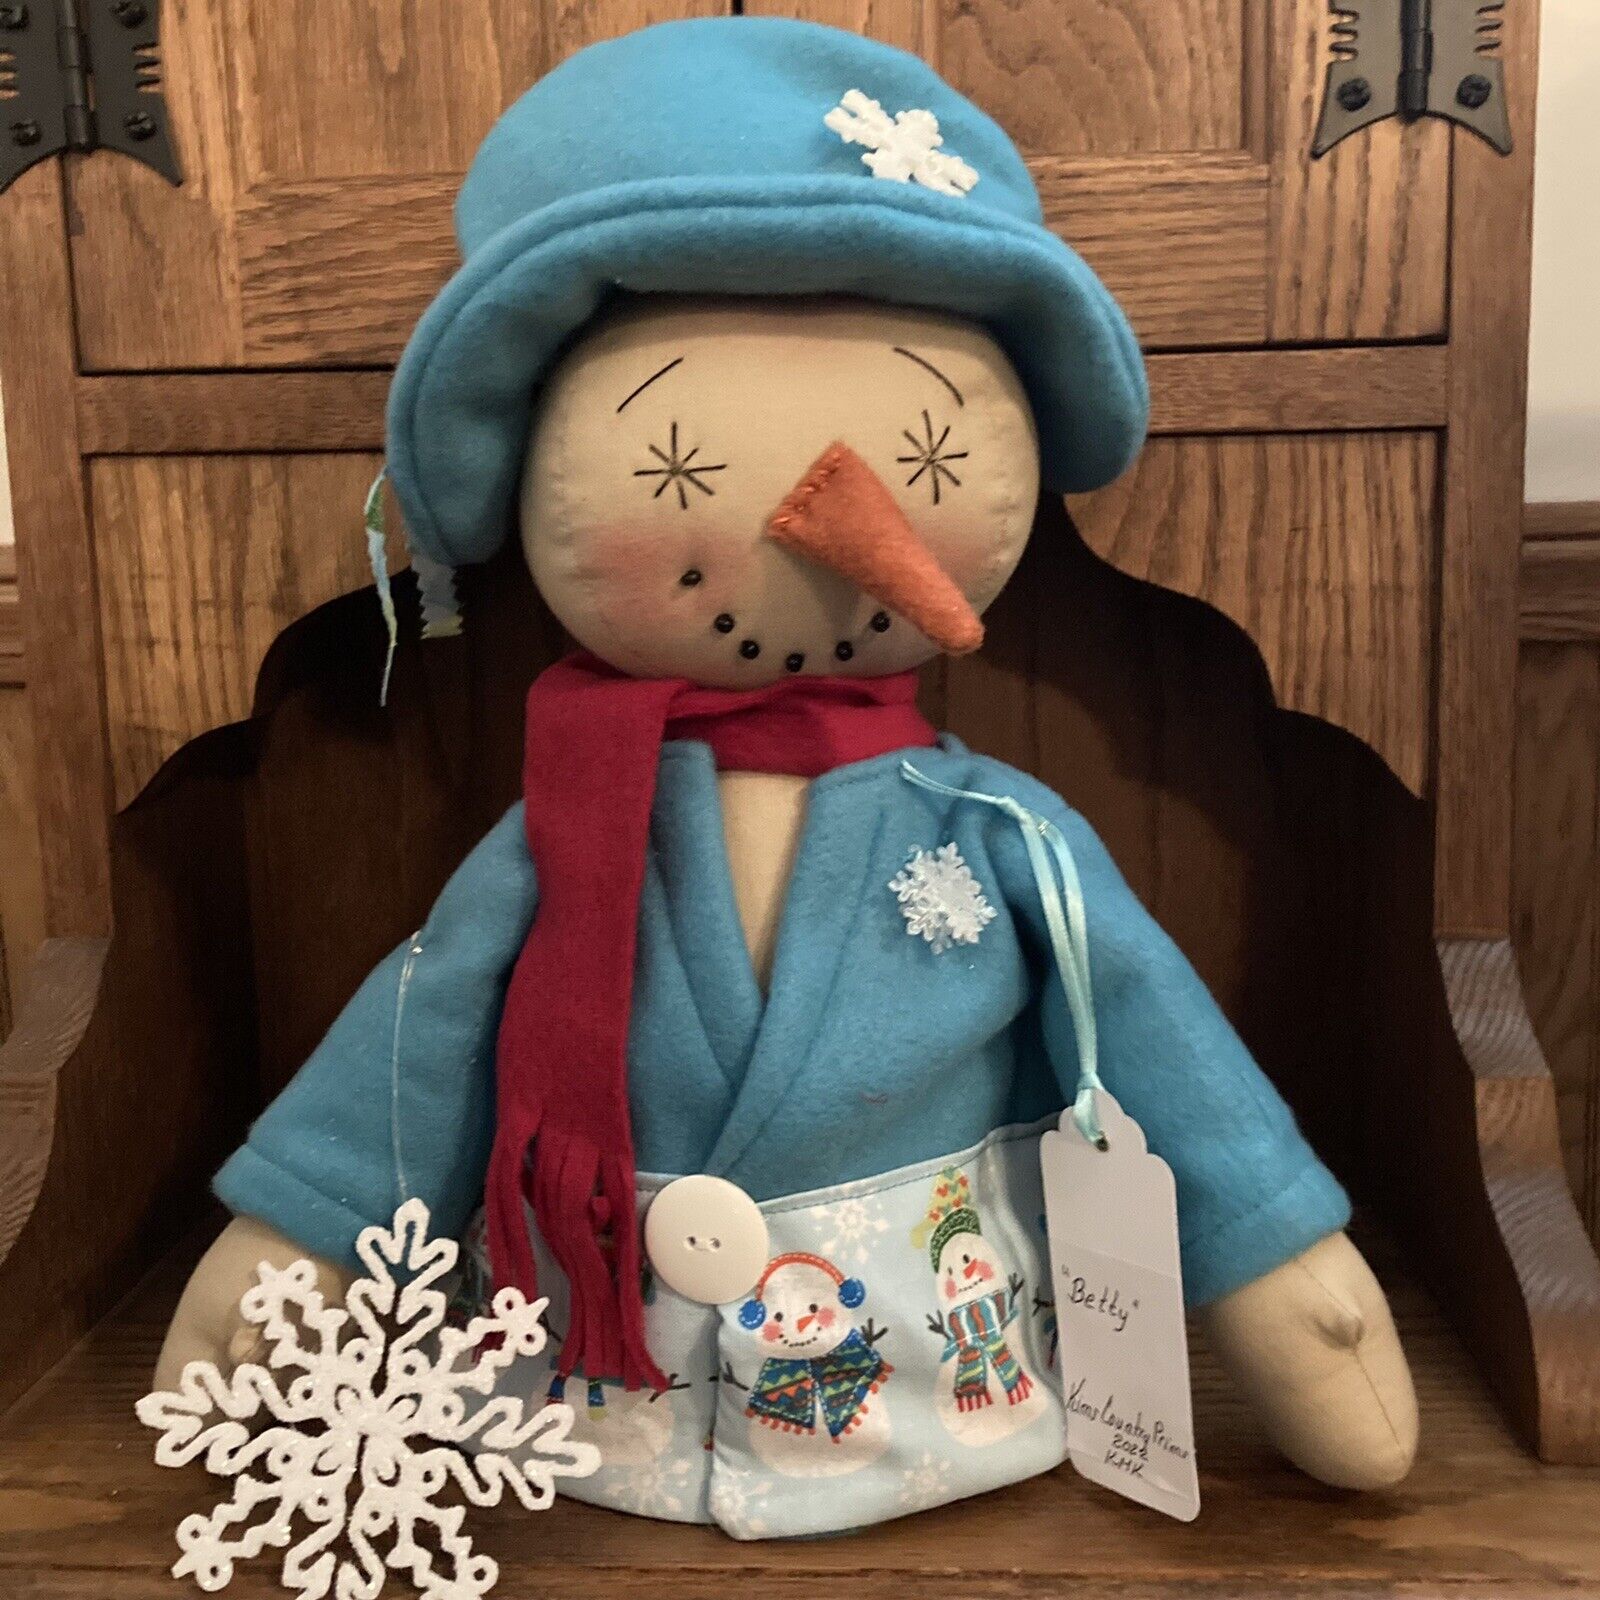 Primitive Snowman Doll "Betty" Winter Shelf Sitter "Let It Snow"